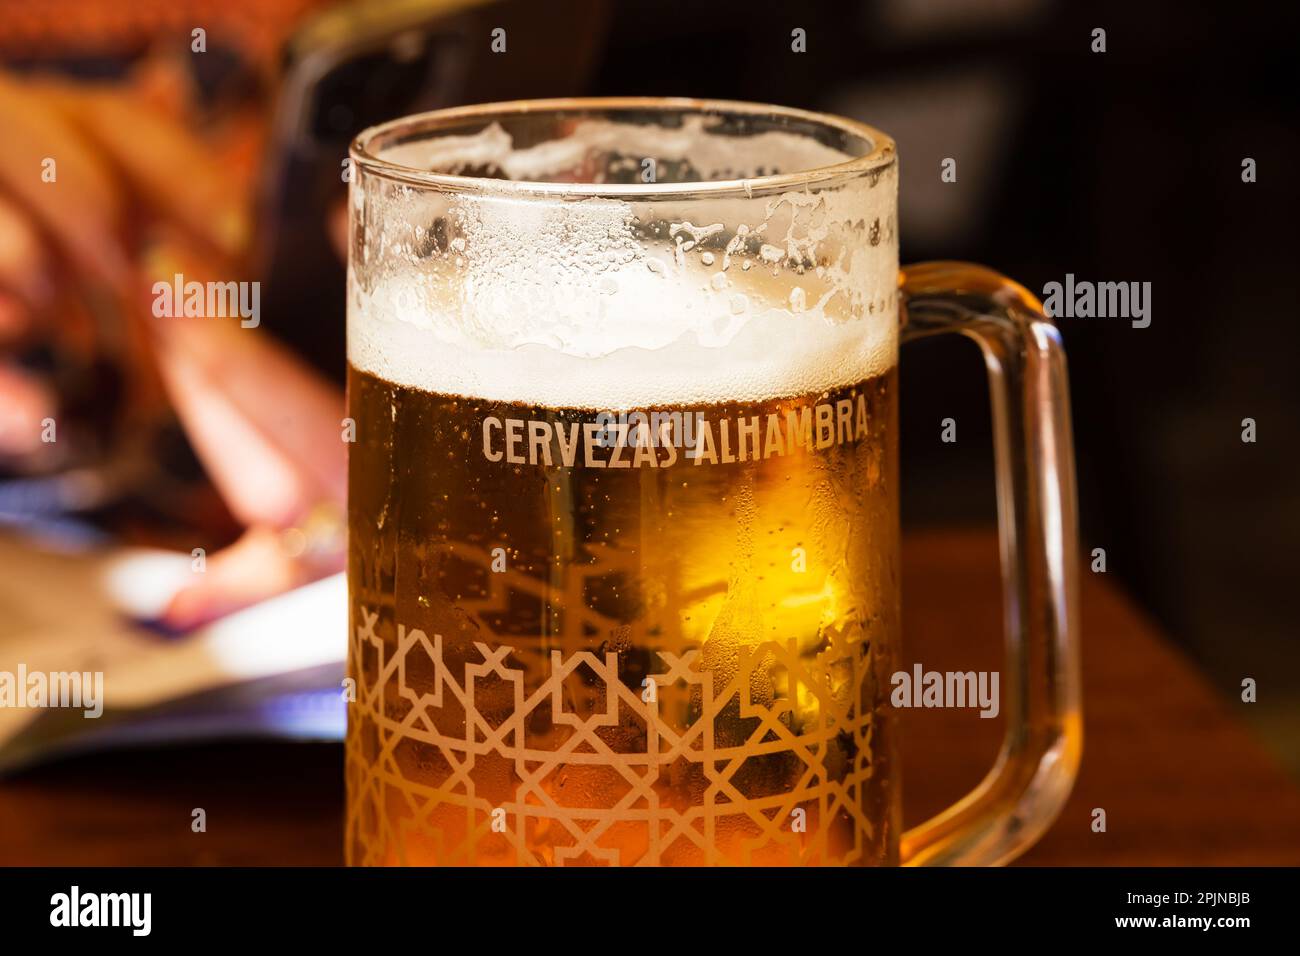 Un verre rafraîchissant de bière froide Cervezas Alhambra lager. Banque D'Images